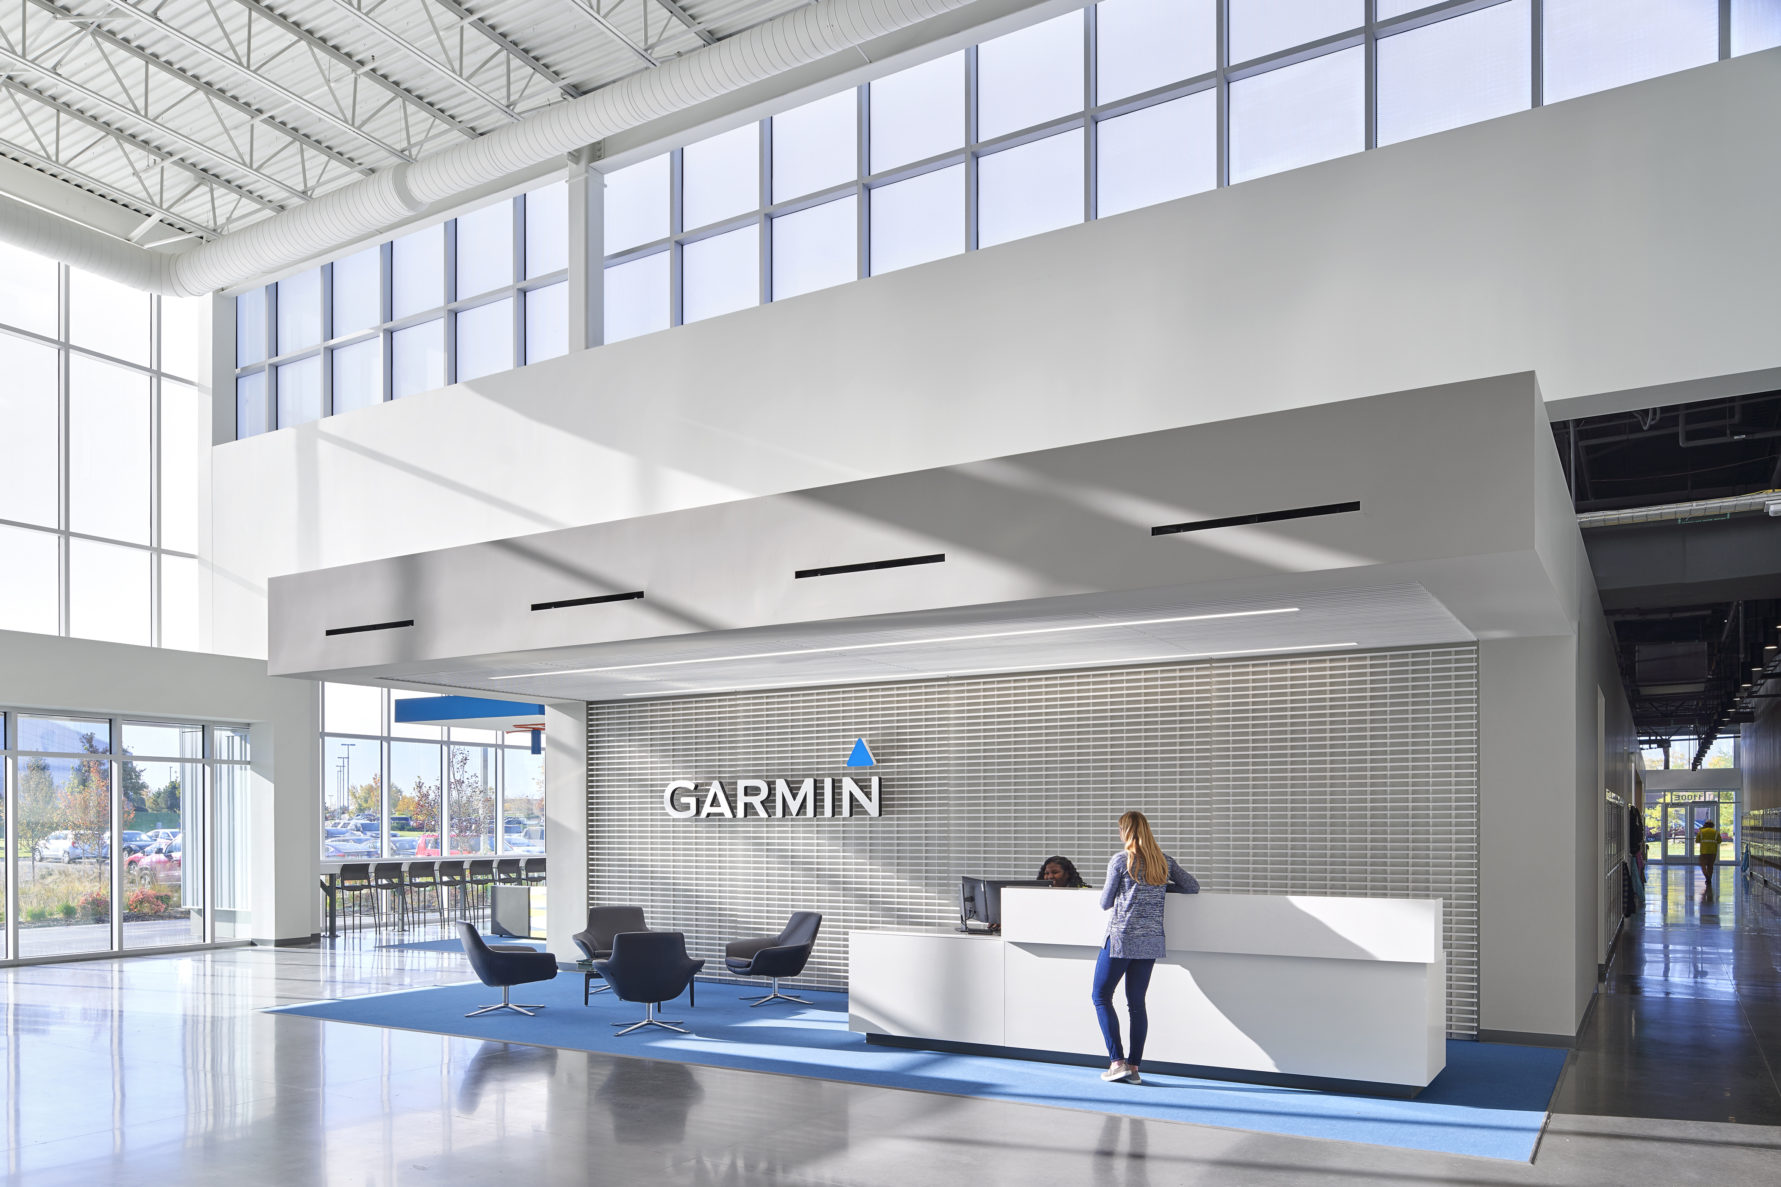 Garmin headquarters expansion in Olathe, Kansas